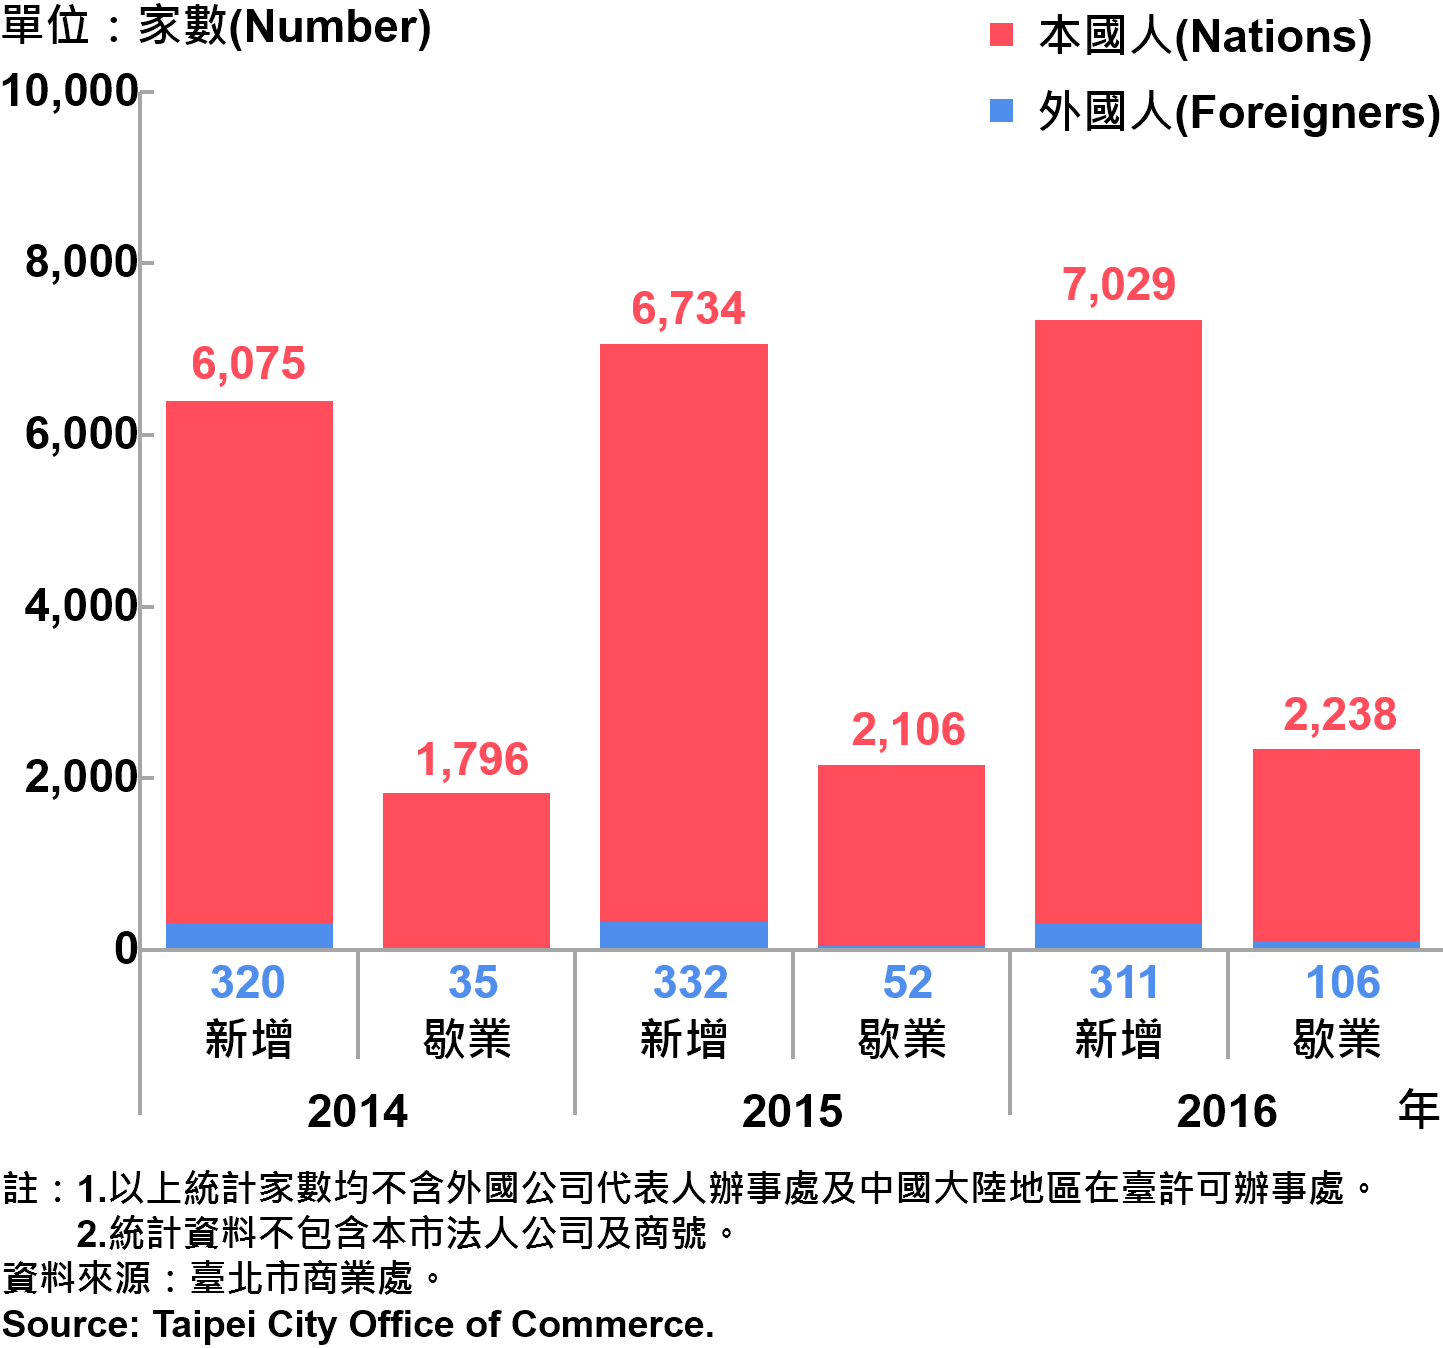 圖21、臺北市公司青創負責人為本國人與外國人分布情形—依新增及歇業家數—2016 Responsible Person of Newly Registered Companies In Taipei by Nationality - Number of Incorporation/Termination —2016